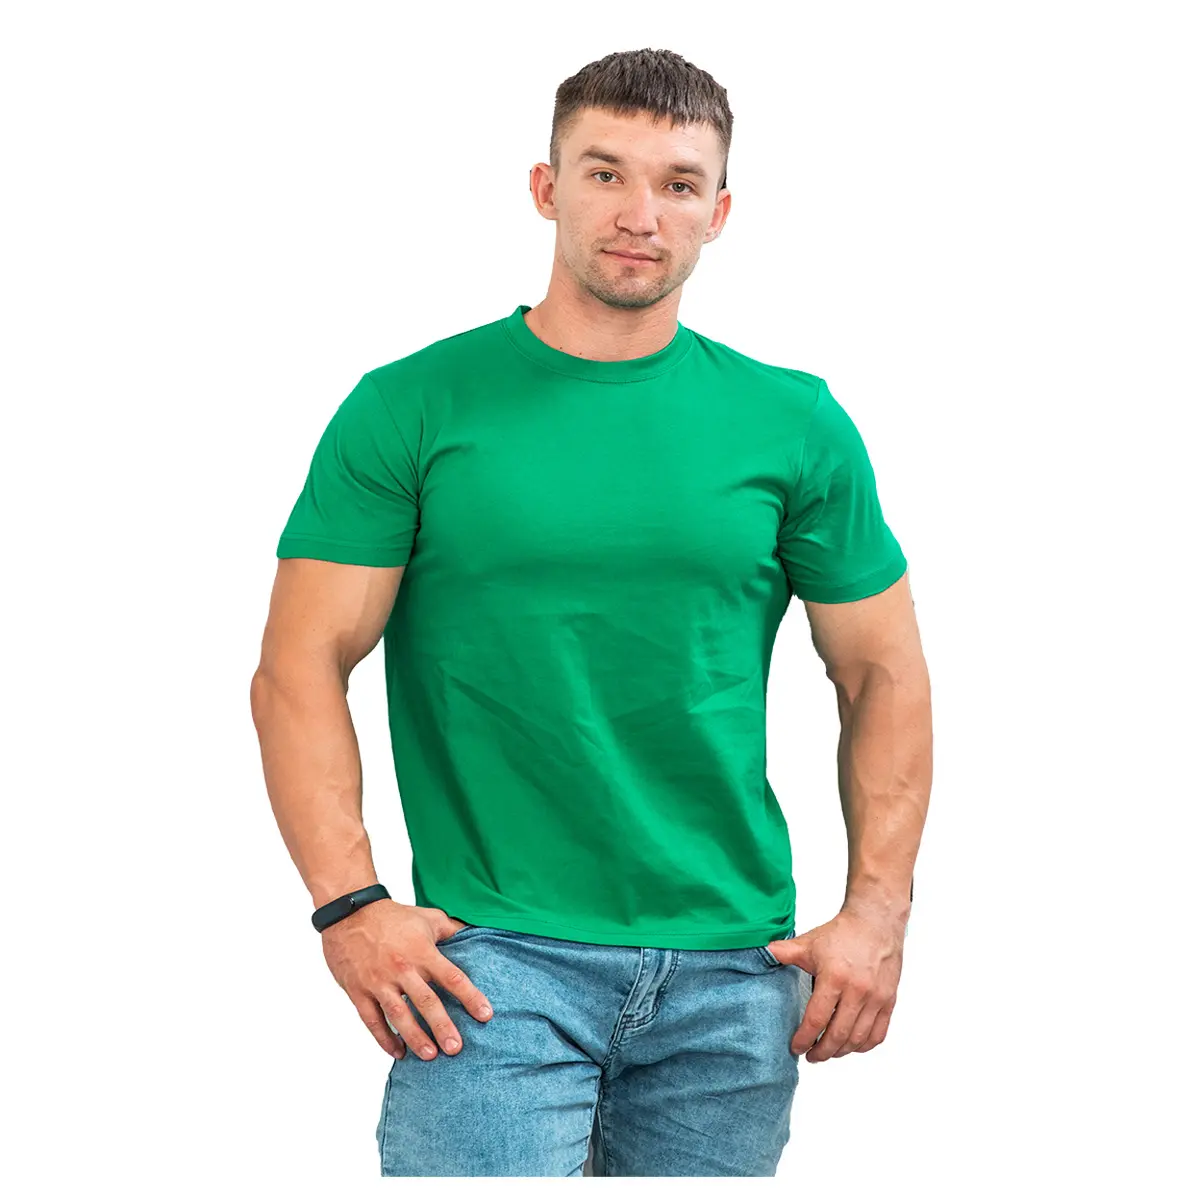 100% 면 제조 업체 가격 면화로 만든 하이 퀄리티 남성 티셔츠 판매